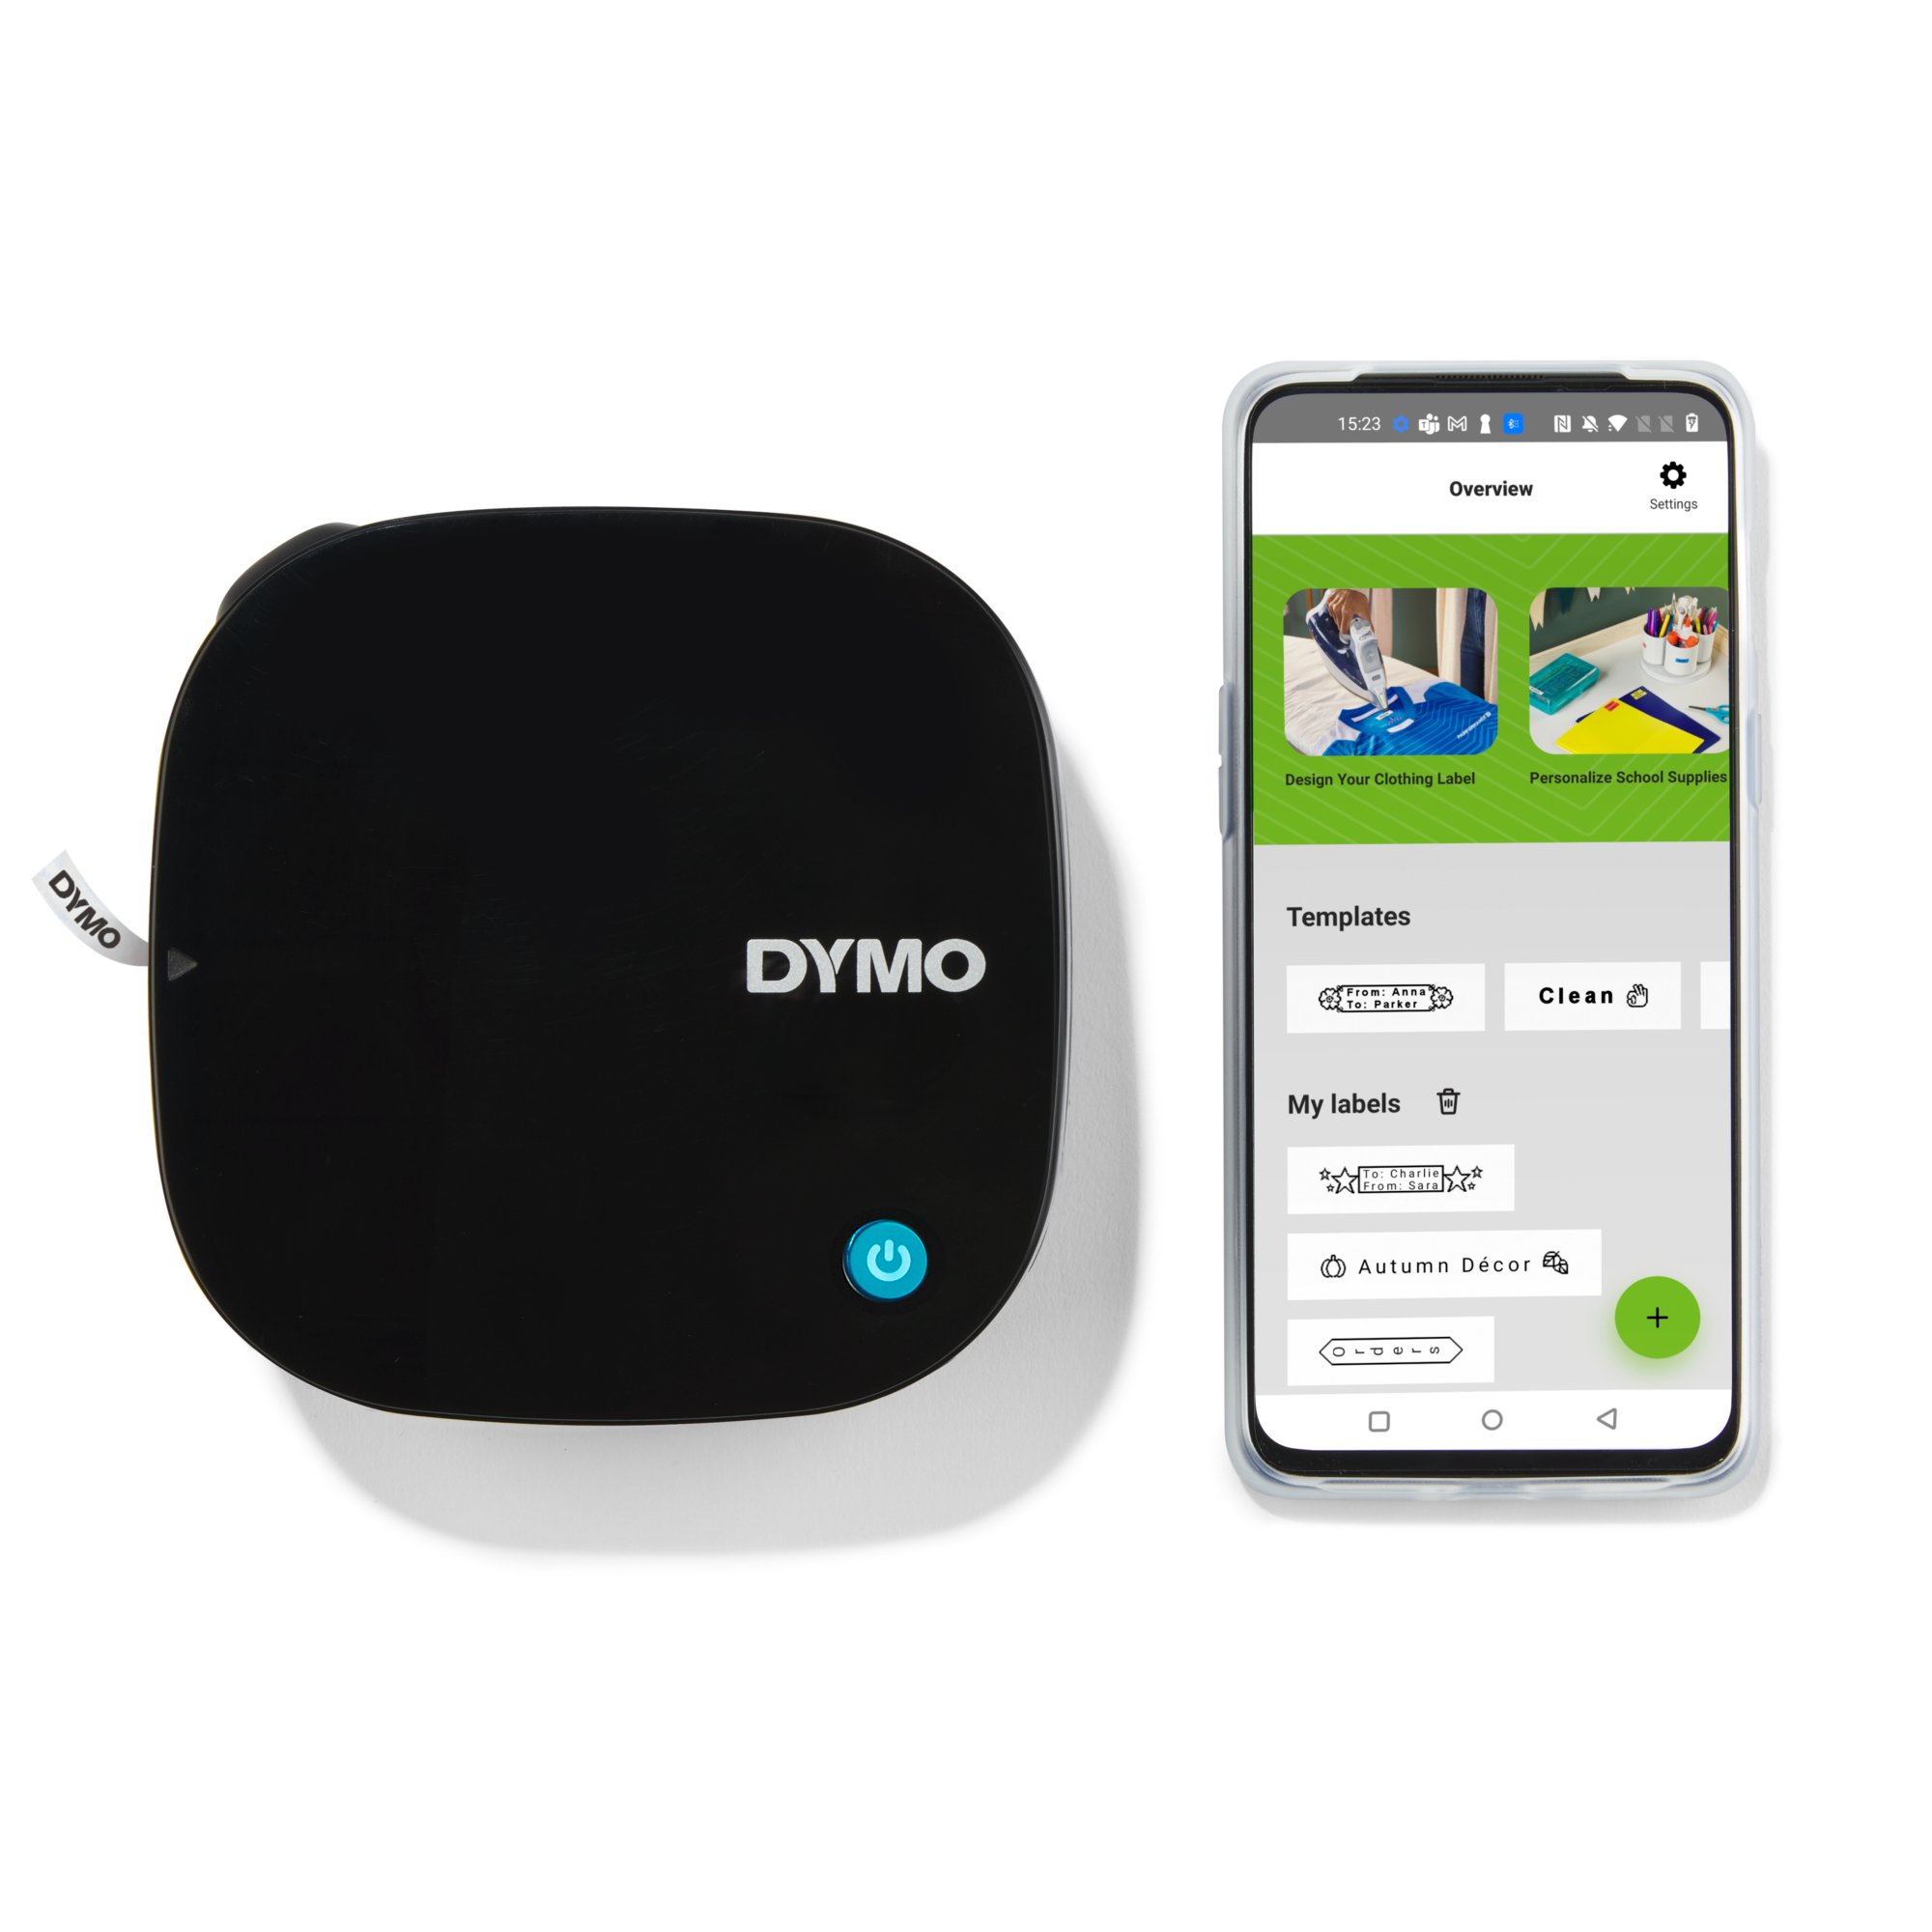 Dymo 1978243 Etiqueteuse avec Connectivité Bluetooth pour Smartphone